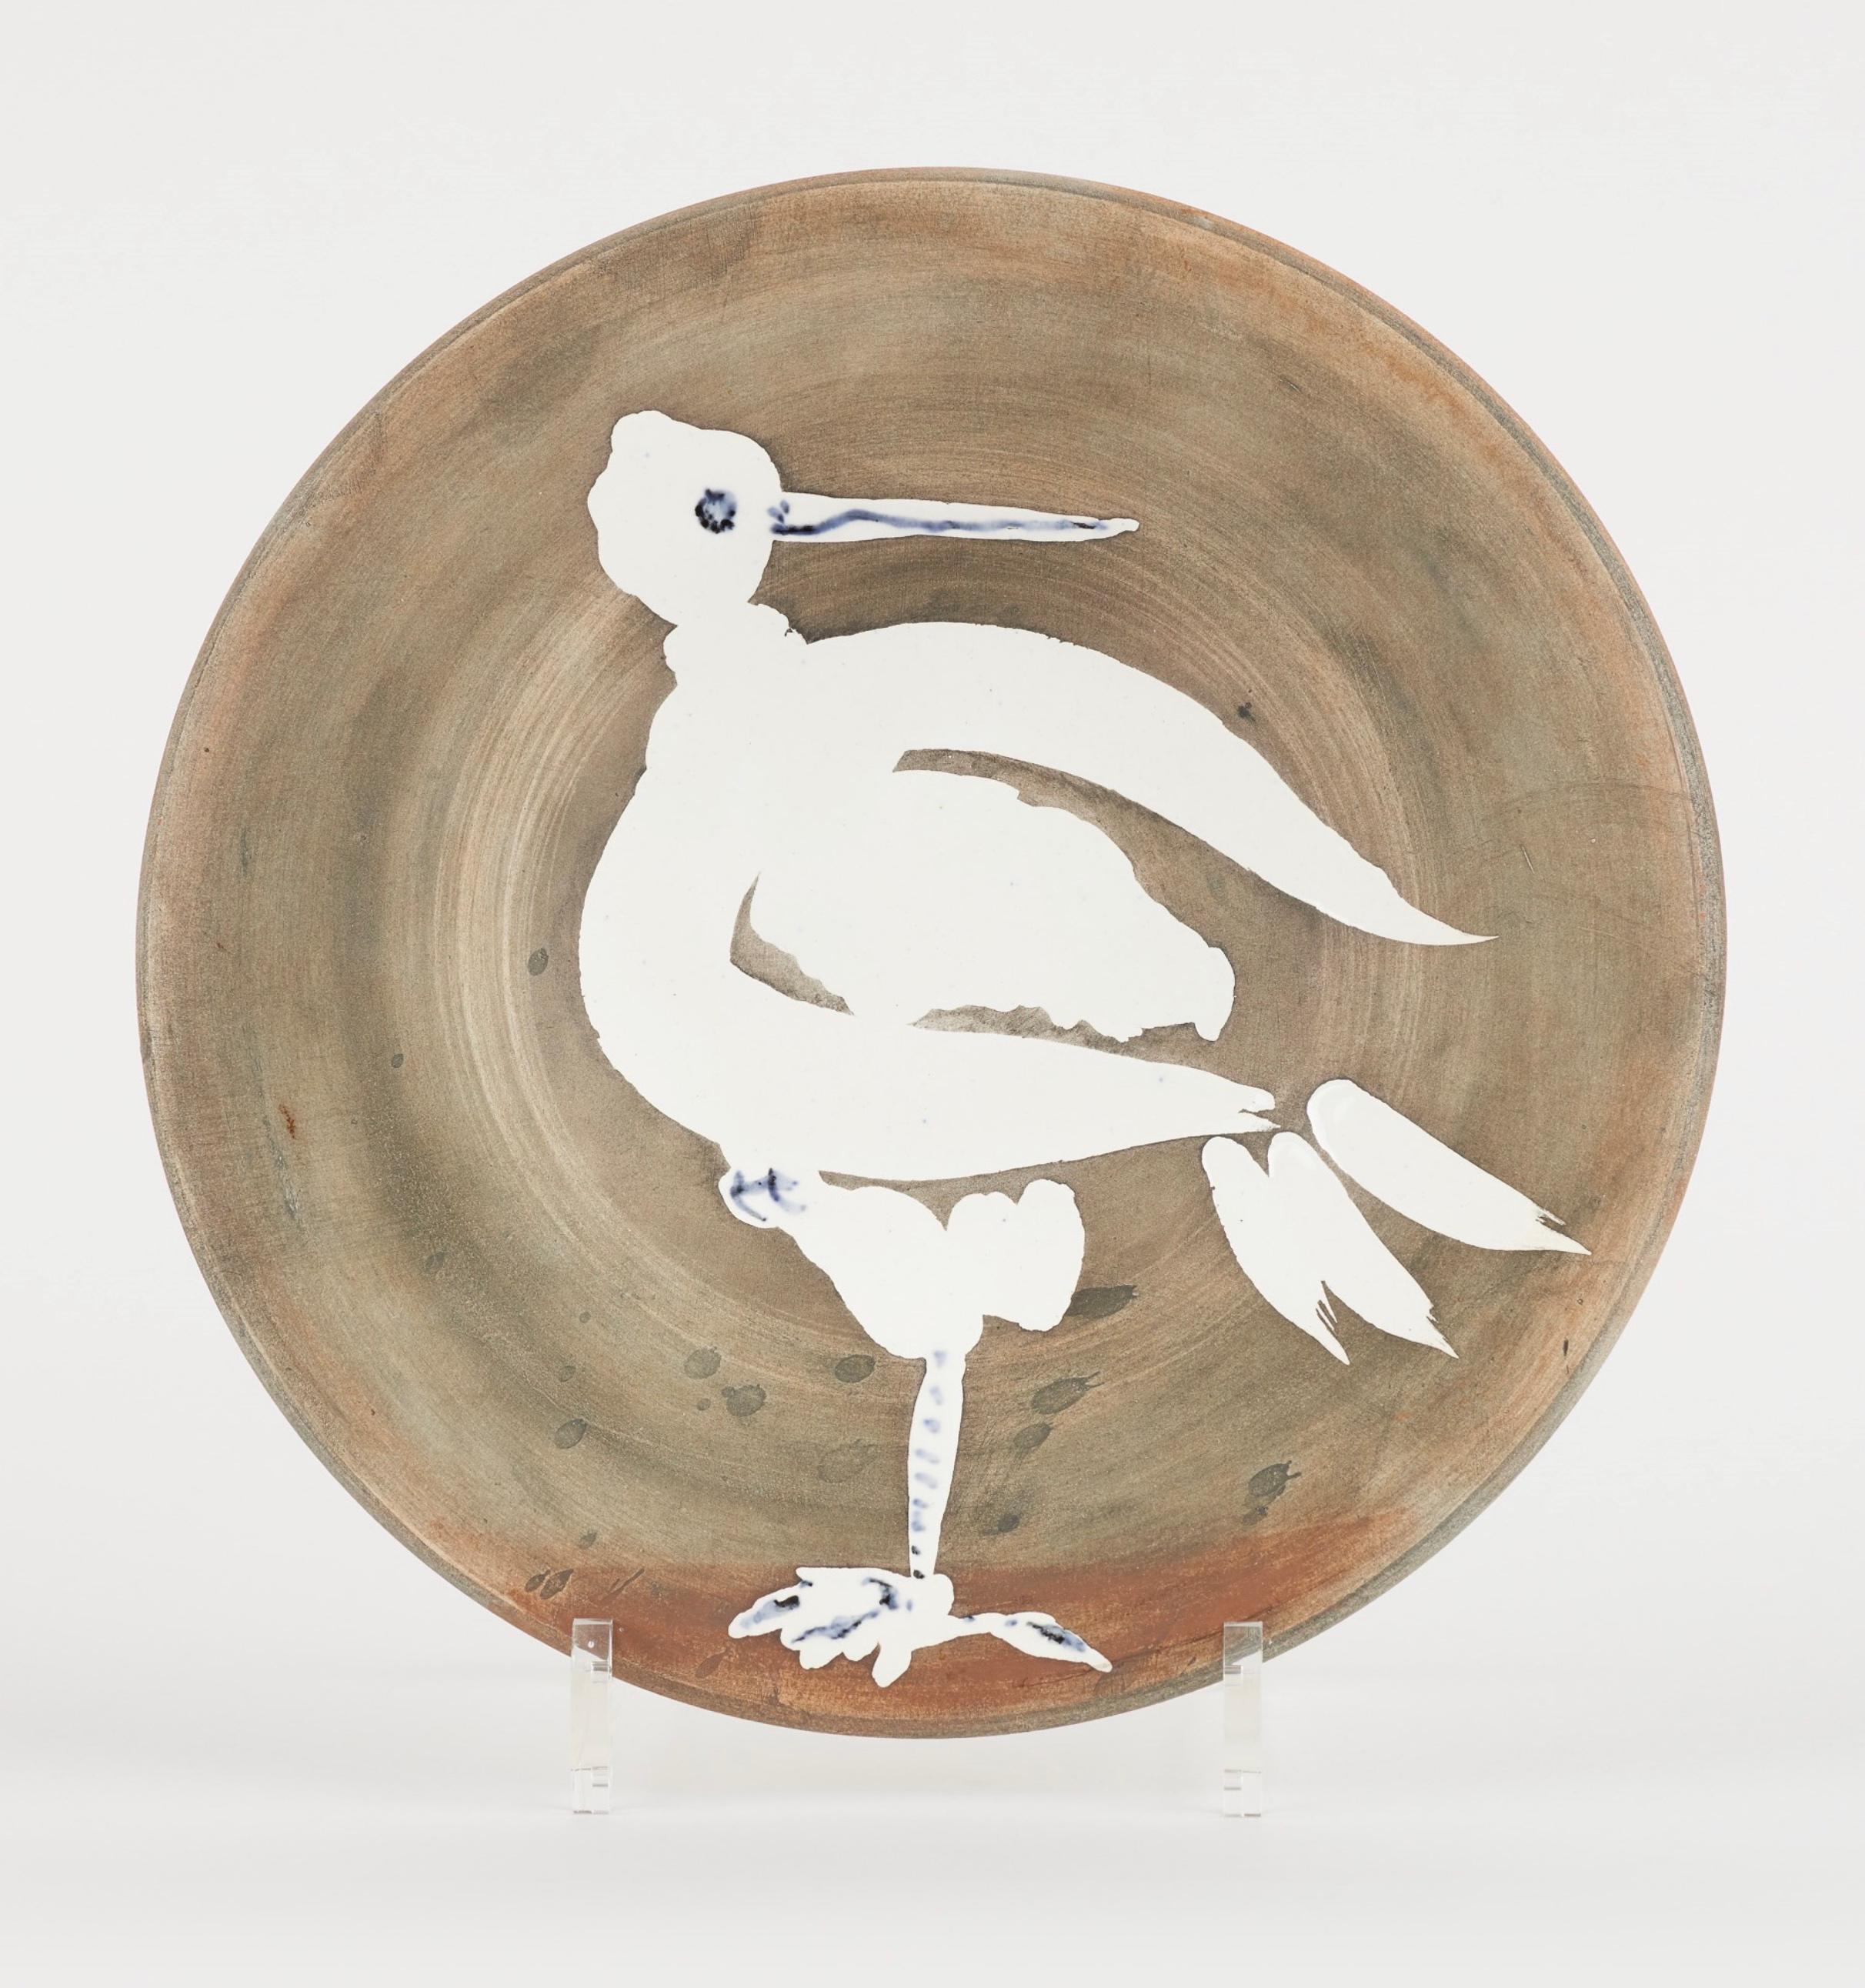 Oiseau no.82, Picasso, Plate, Bird, Animals, Design, Postwar, Interior, 1960's - Art by Pablo Picasso